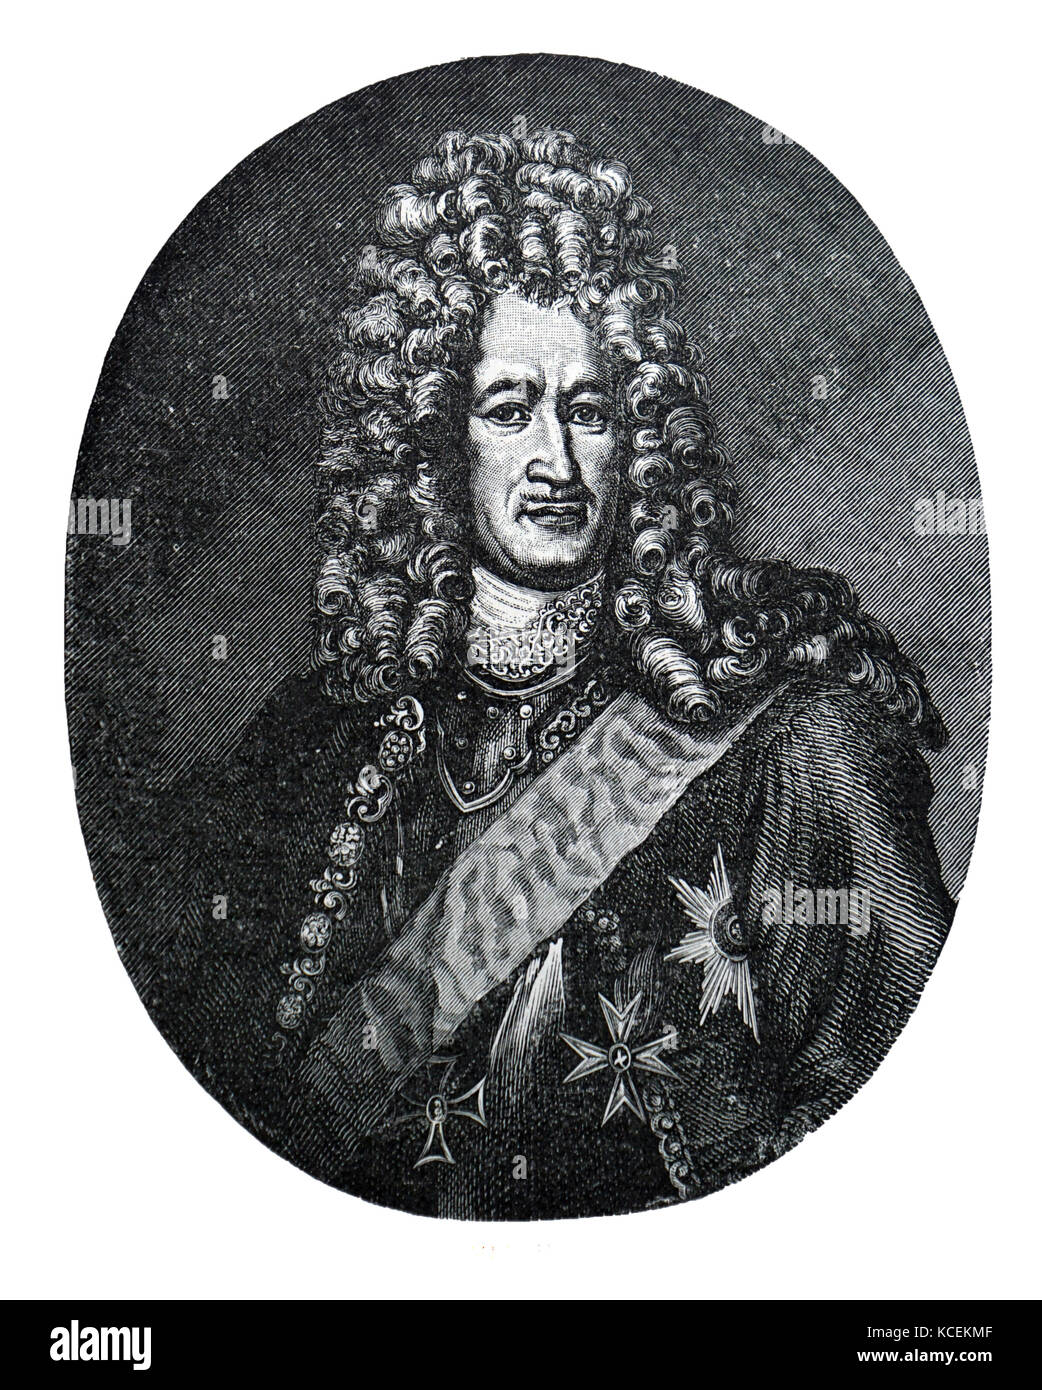 Ritratto inciso di Alexander Danilovich Menšikov (1673-1729) un russo statista e principe dell'impero russo. Datata xviii secolo Foto Stock